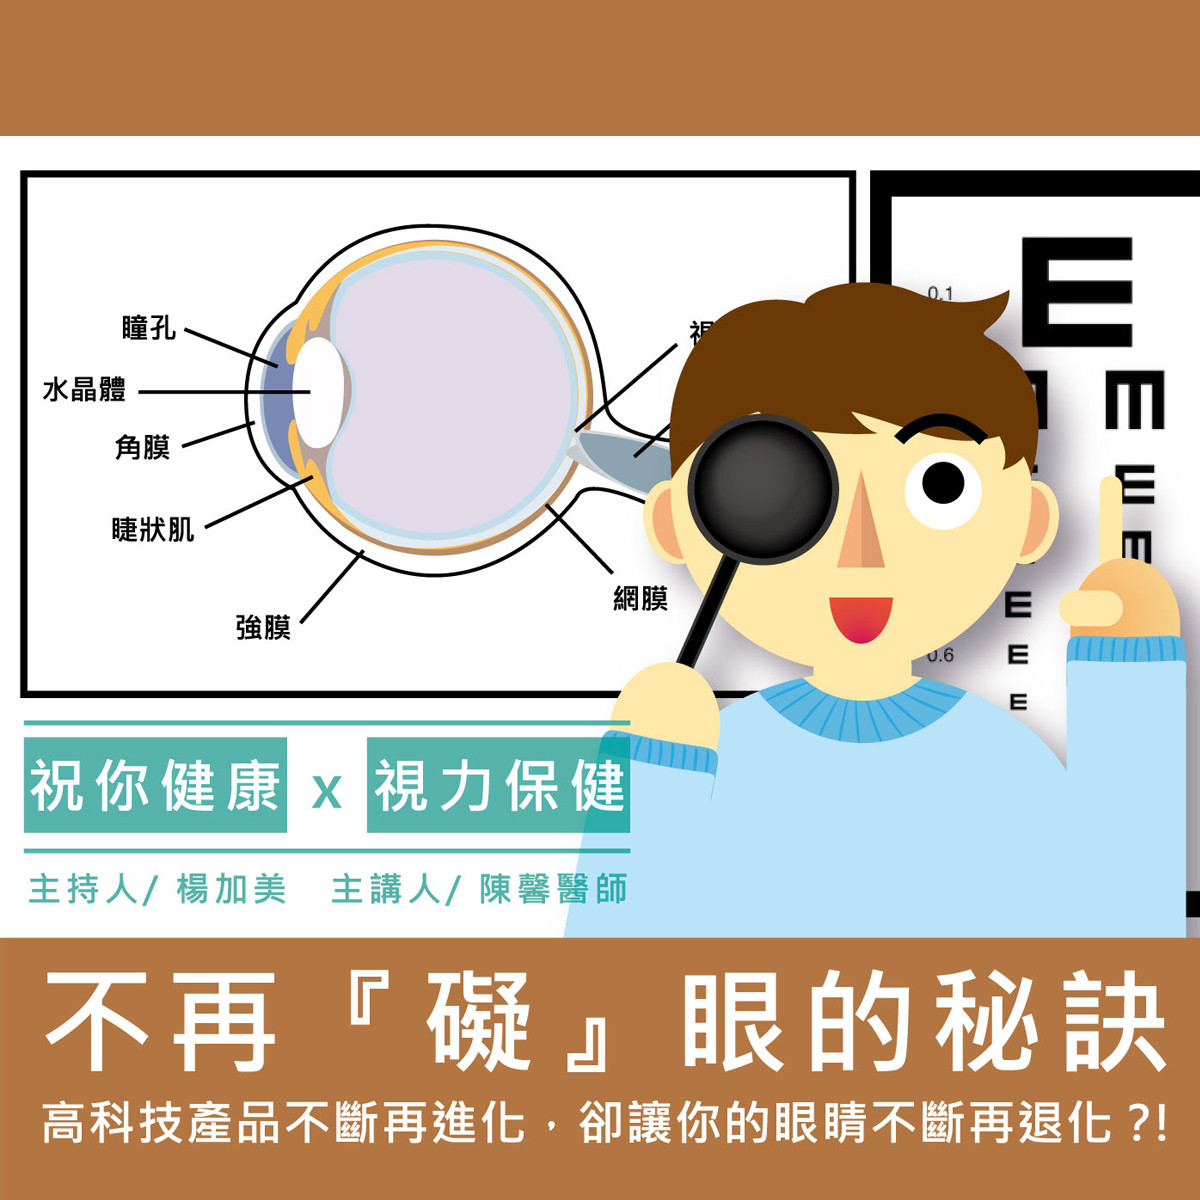 【祝你健康】視力保健 - 1.眼睛構造封面圖